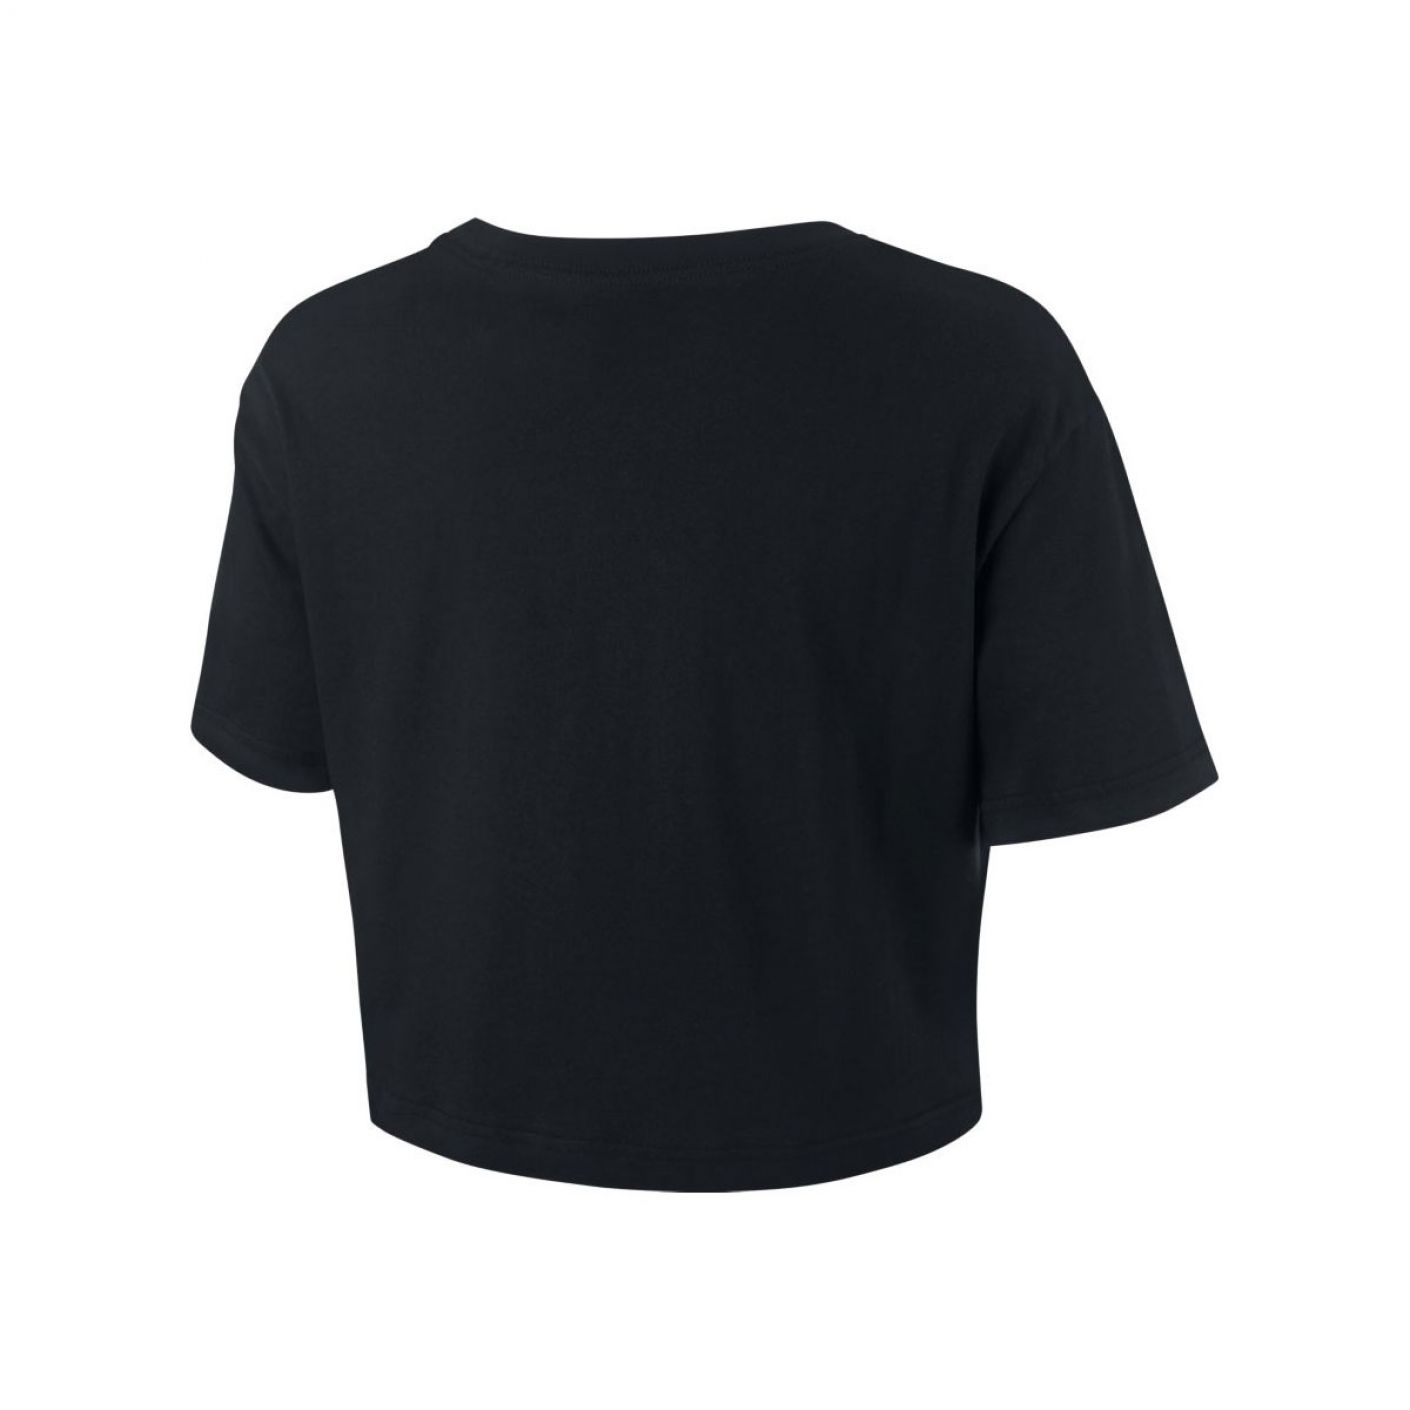 Nike Women's Essential Cropped Black Sportswear T-shirt